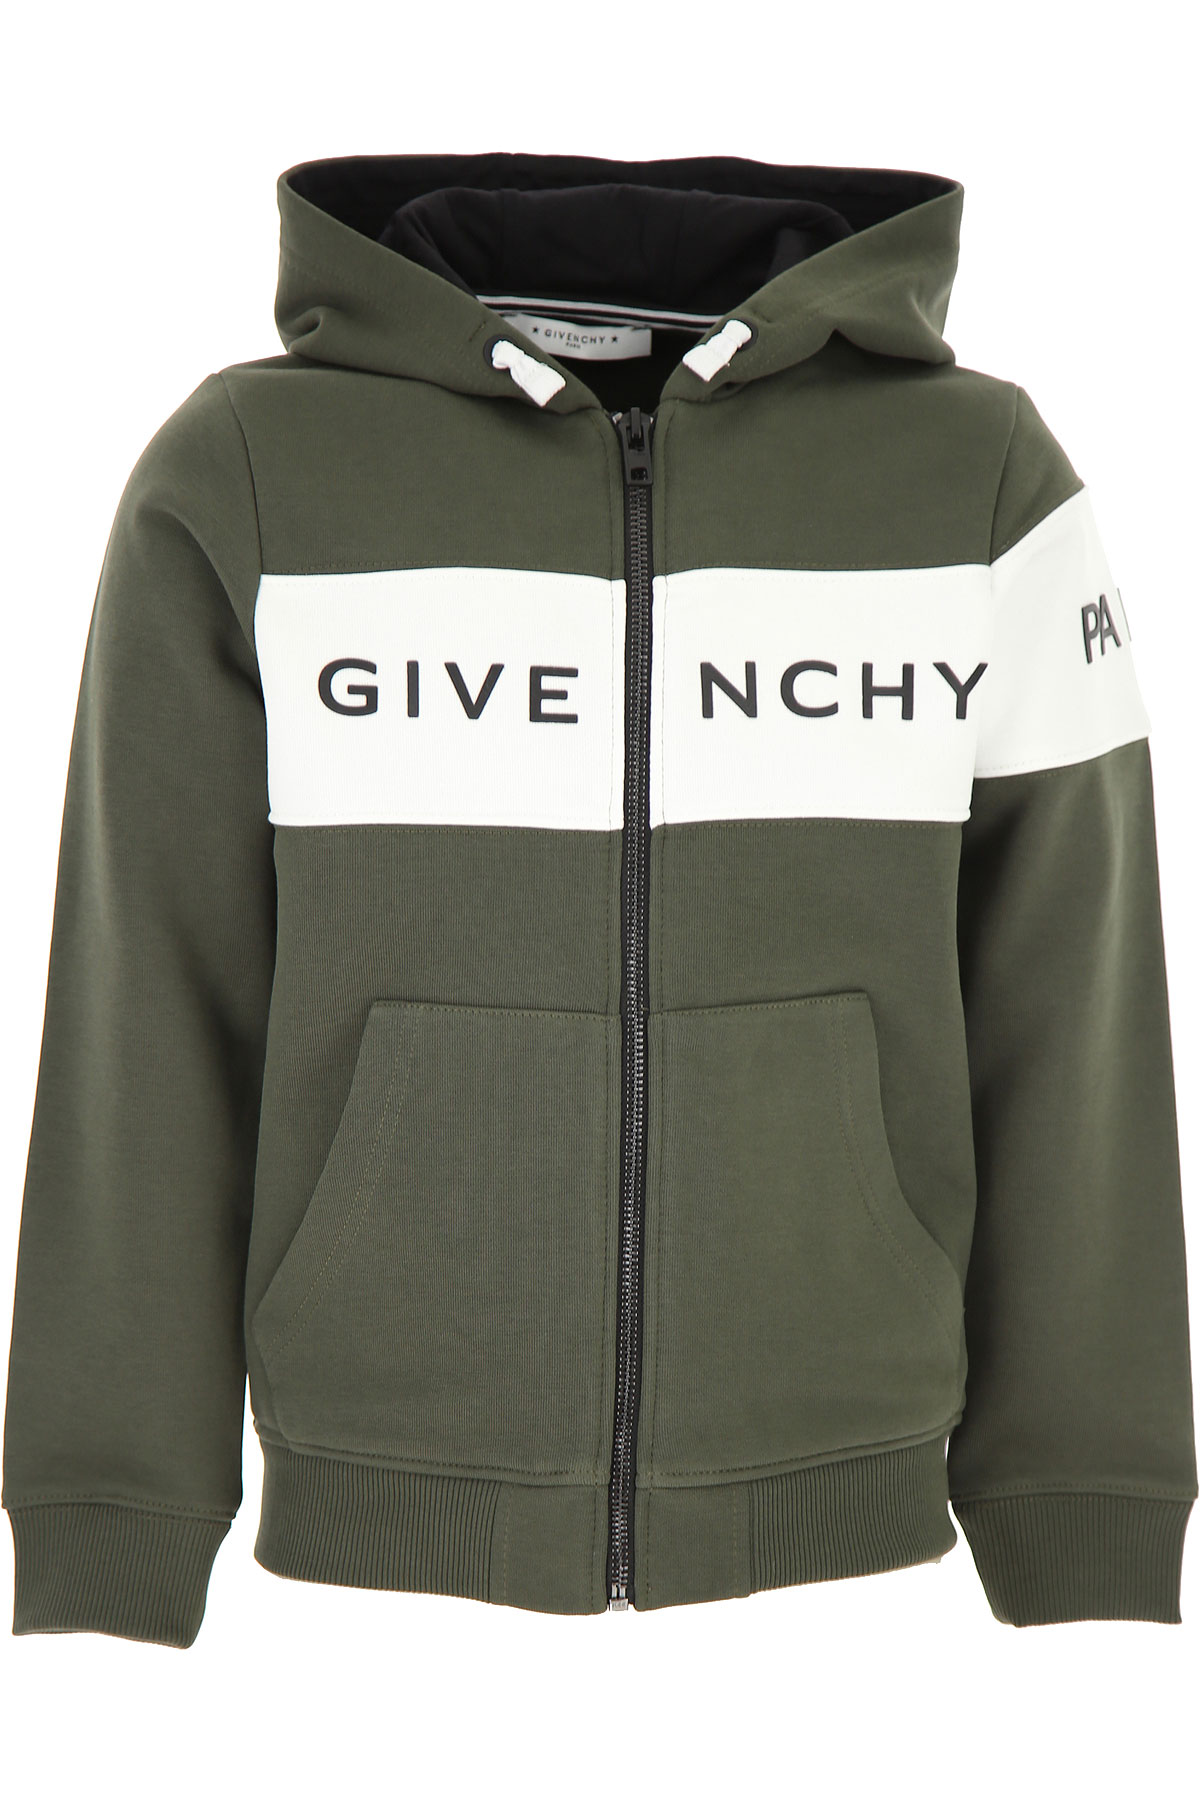 Givenchy Kinder Sweatshirt & Kapuzenpullover für Jungen Günstig im Sale, Dunkel Militärgrün, Baumwolle, 2017, 10Y 12Y 4Y 6Y 8Y